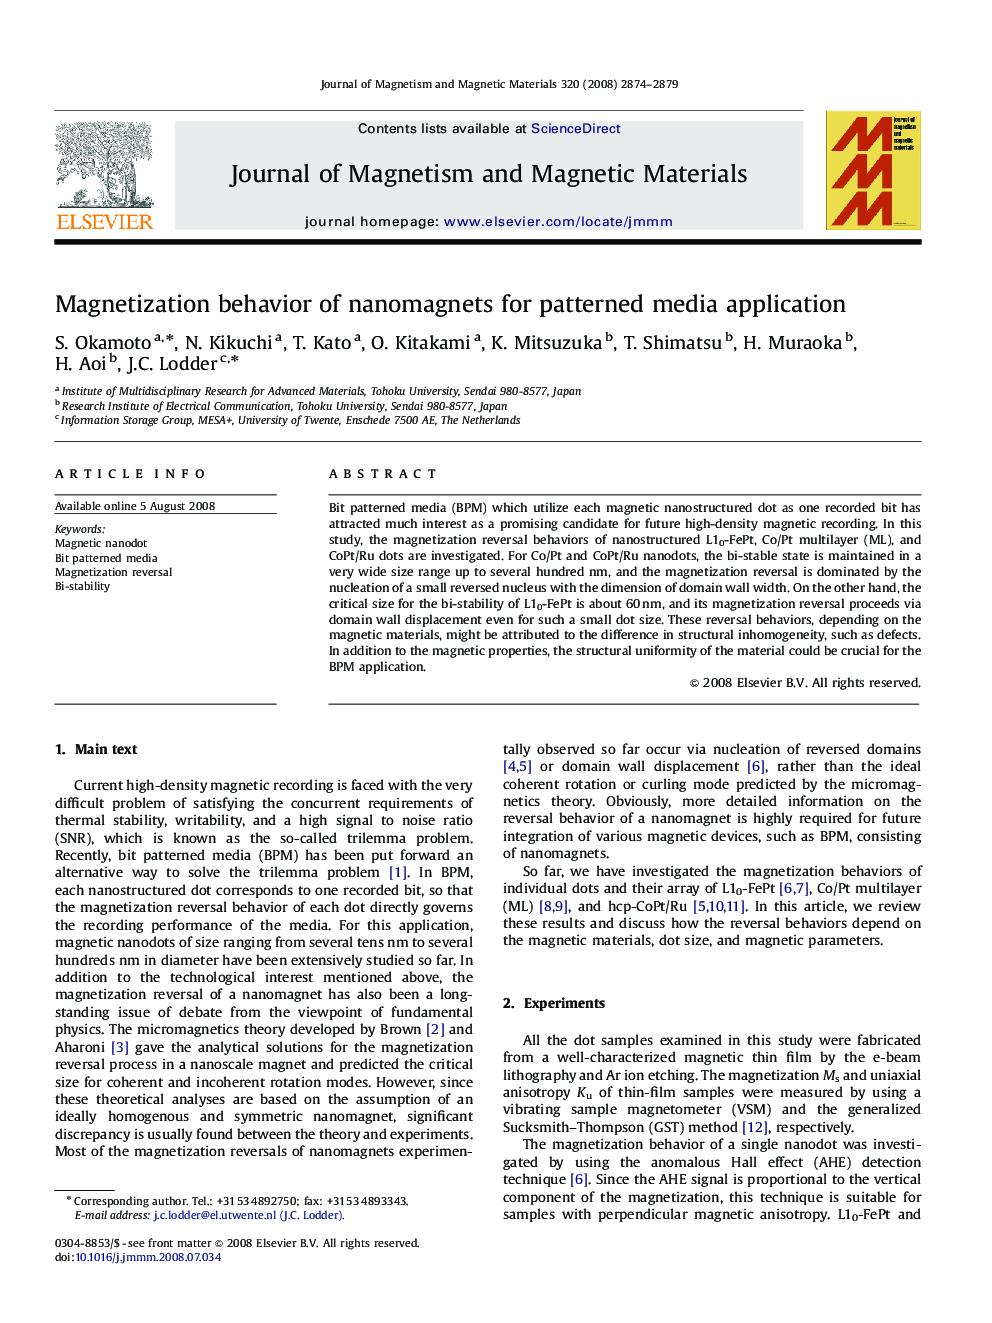 Magnetization behavior of nanomagnets for patterned media application